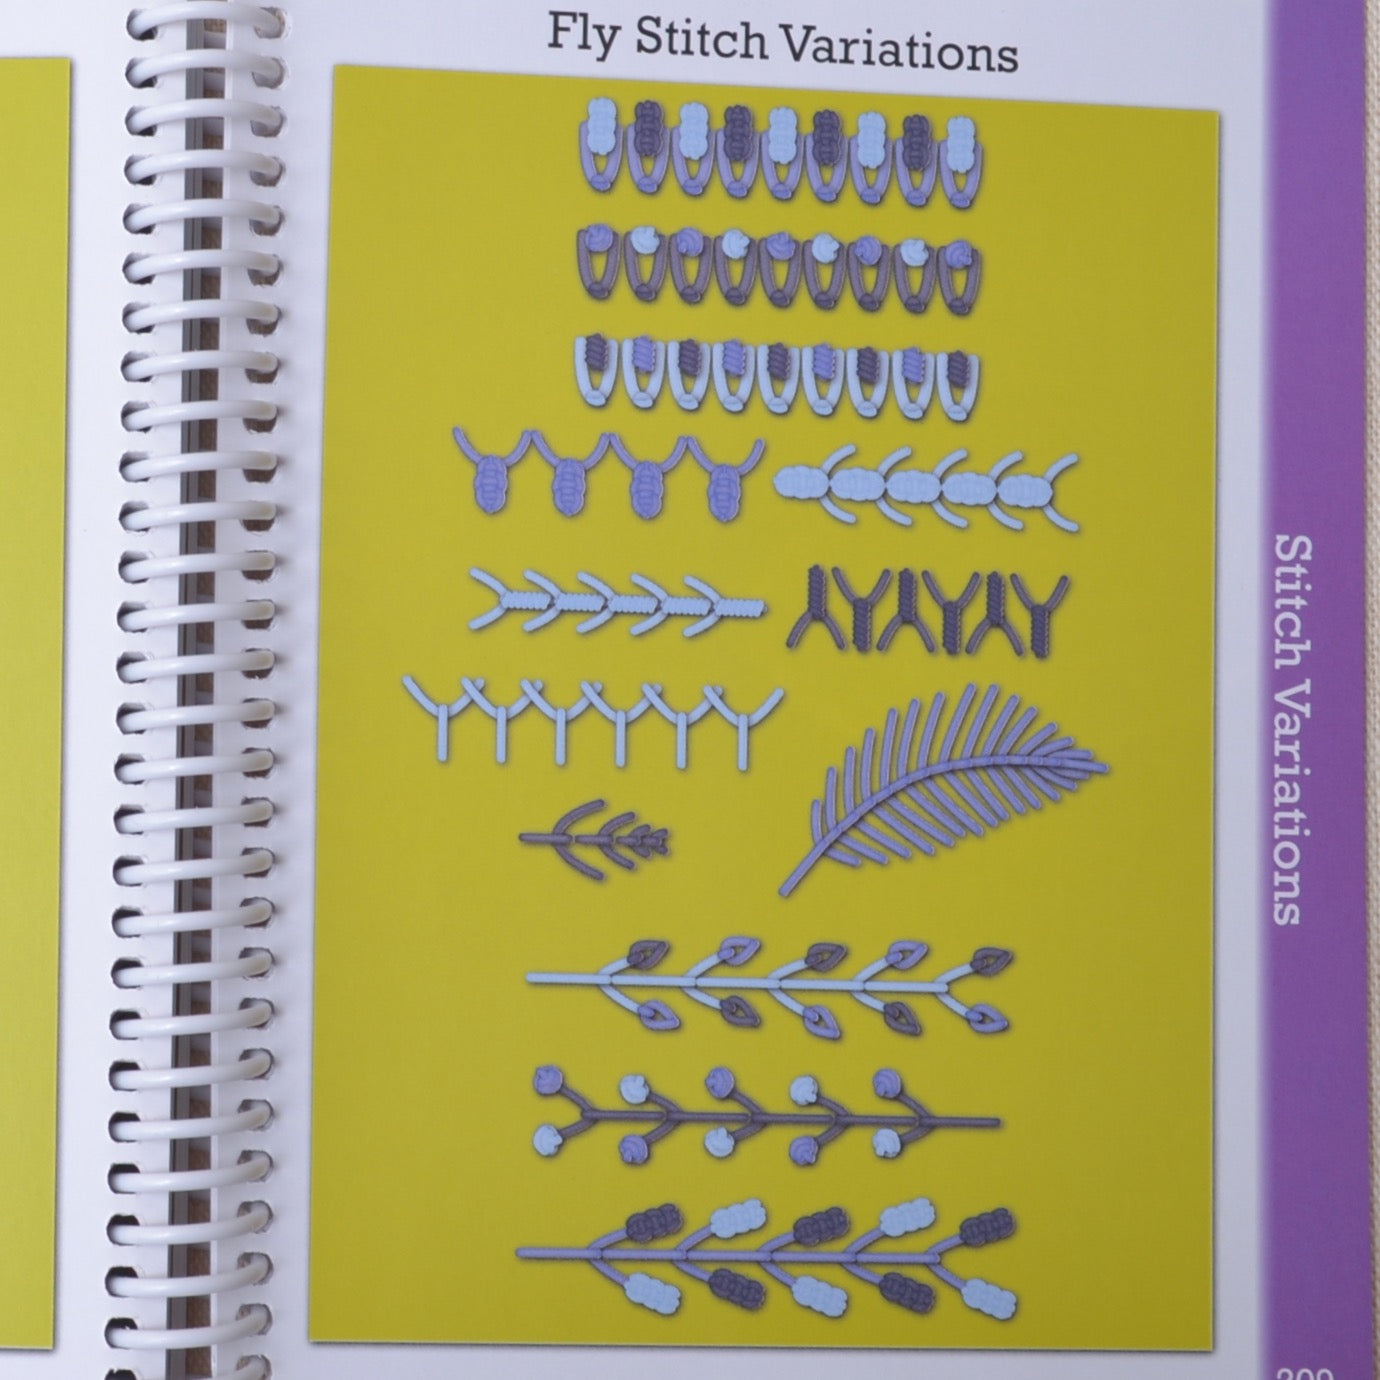  Sue Spargo Creative Stitching Second Edition Pattern : Sue  Spargo: Arts, Crafts & Sewing